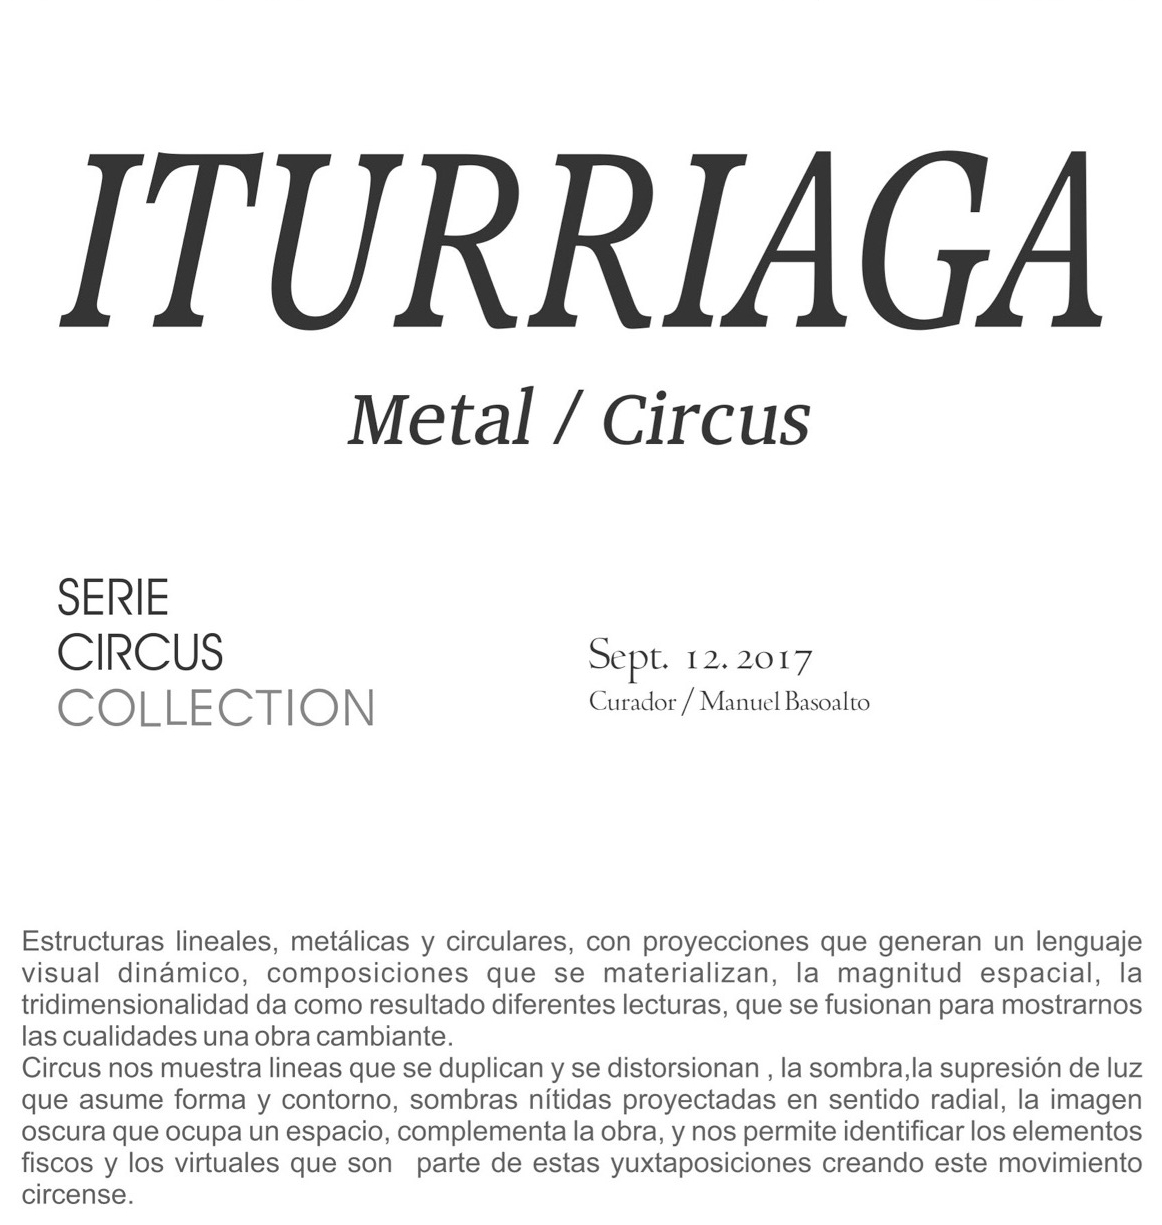 Liliana Iturriaga - Metal Circus